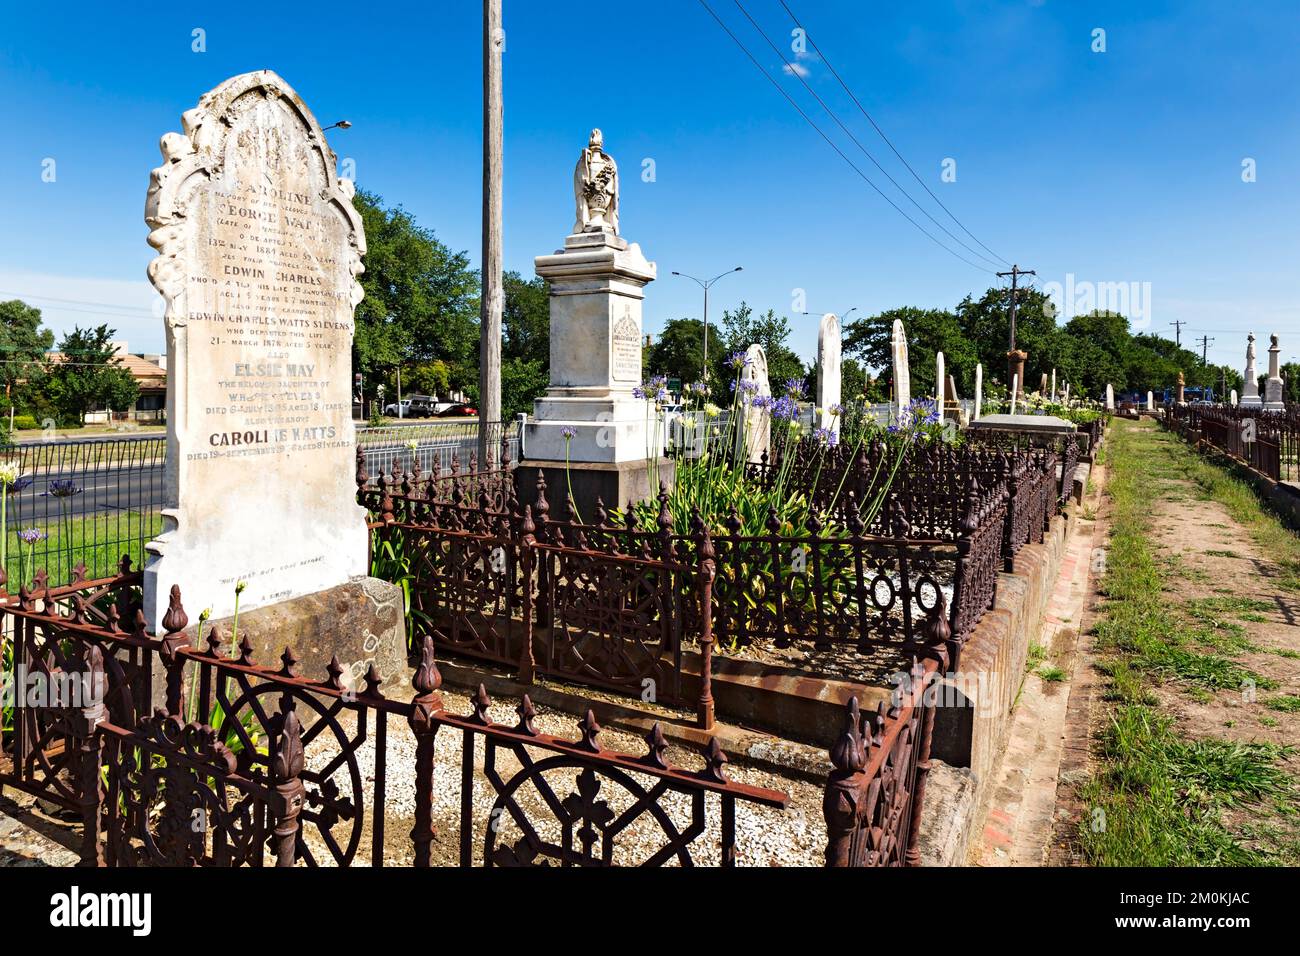 Ballarat Australie / pierres tombales et tombes au vieux cimetière de Ballarat. Banque D'Images